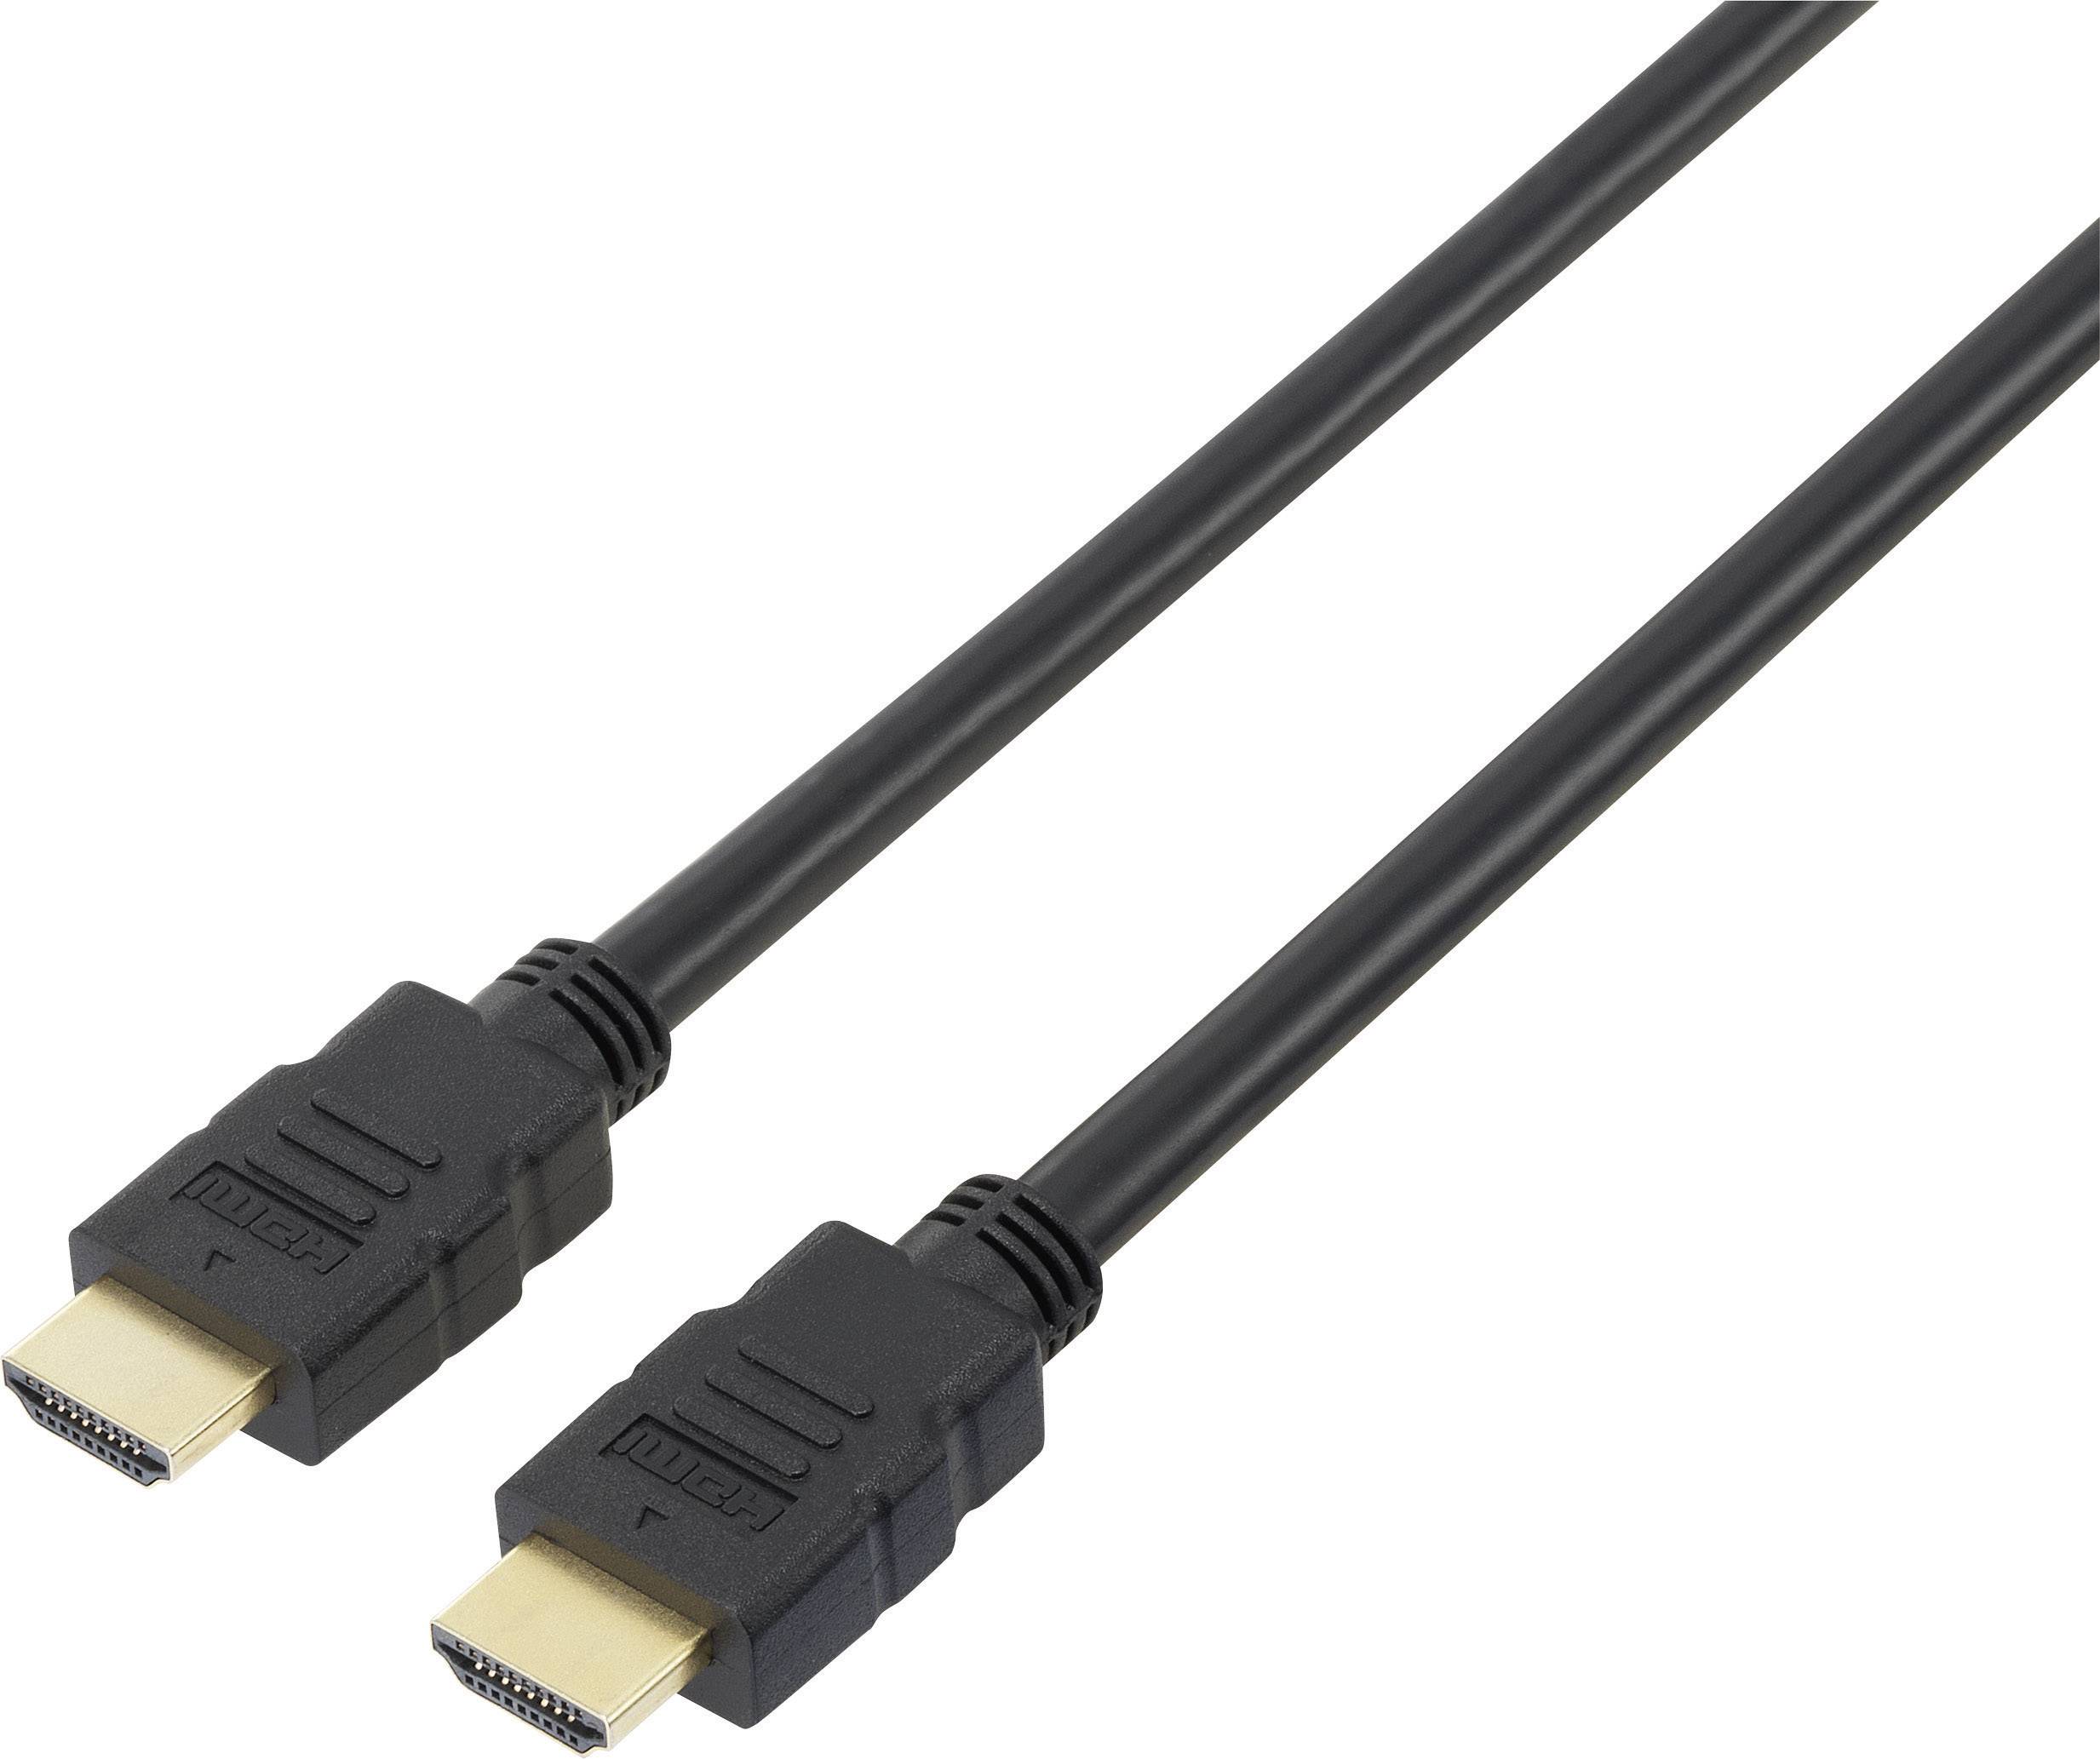 CONRAD SpeaKa Professional HDMI Anschlusskabel [1x HDMI-Stecker - 1x HDMI-Stecker] 10 m Schwarz